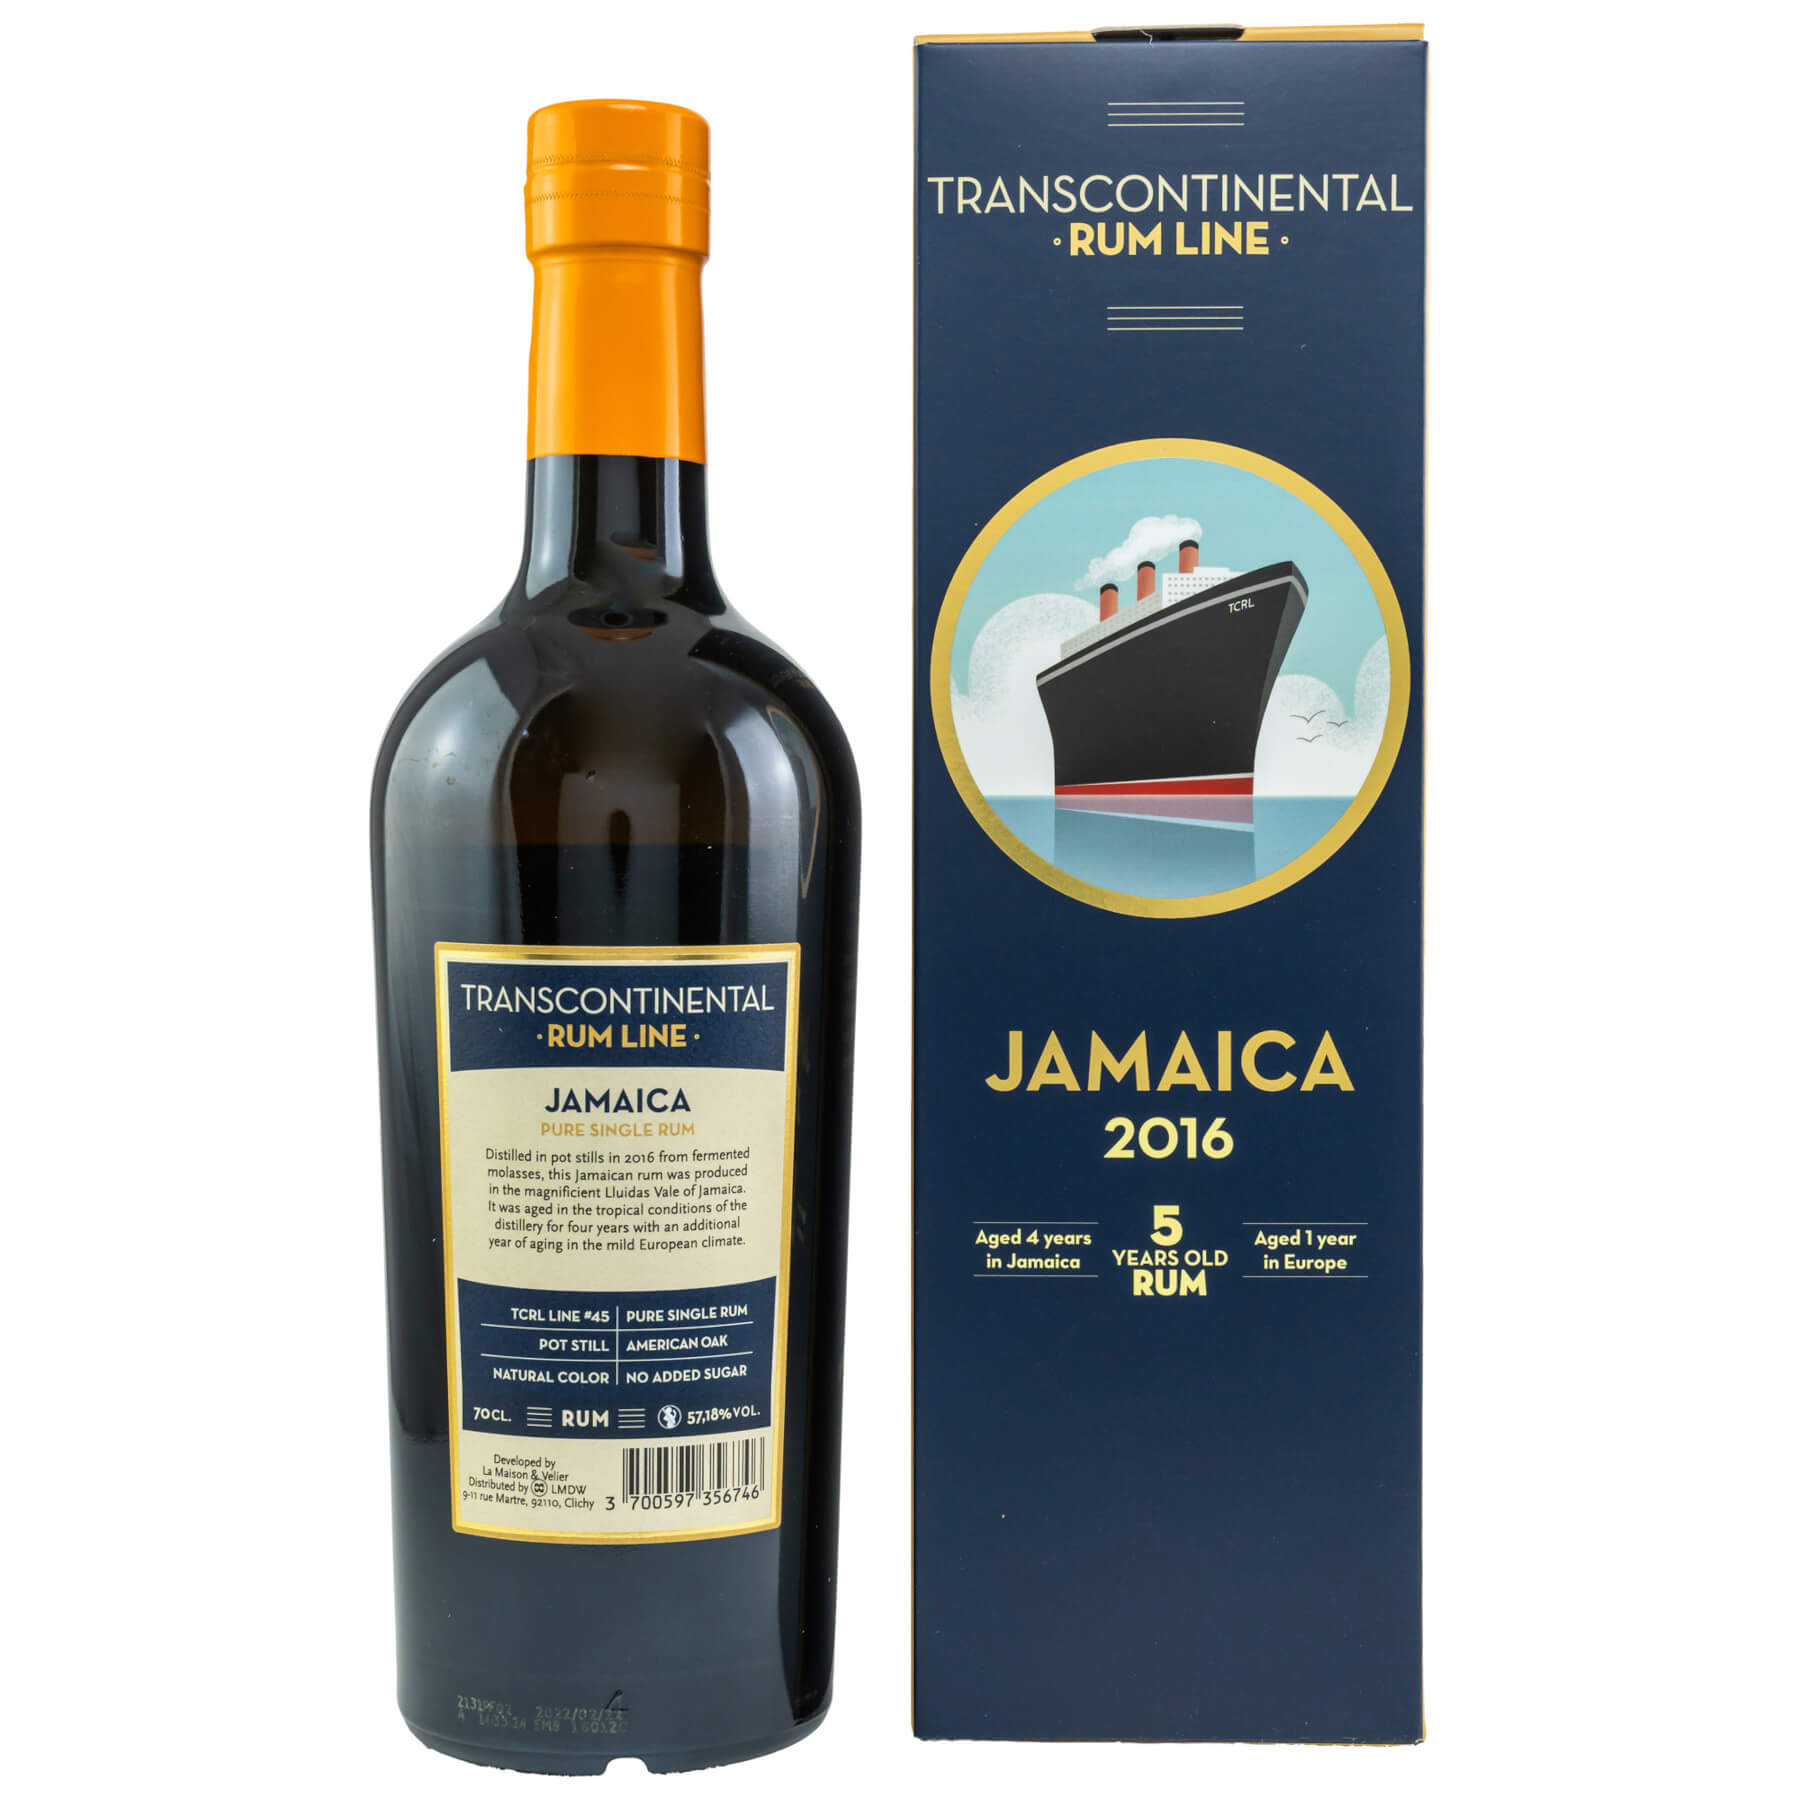 Flasche Transcontinental Rum Line Jamaica 2016 Rum Rückseite